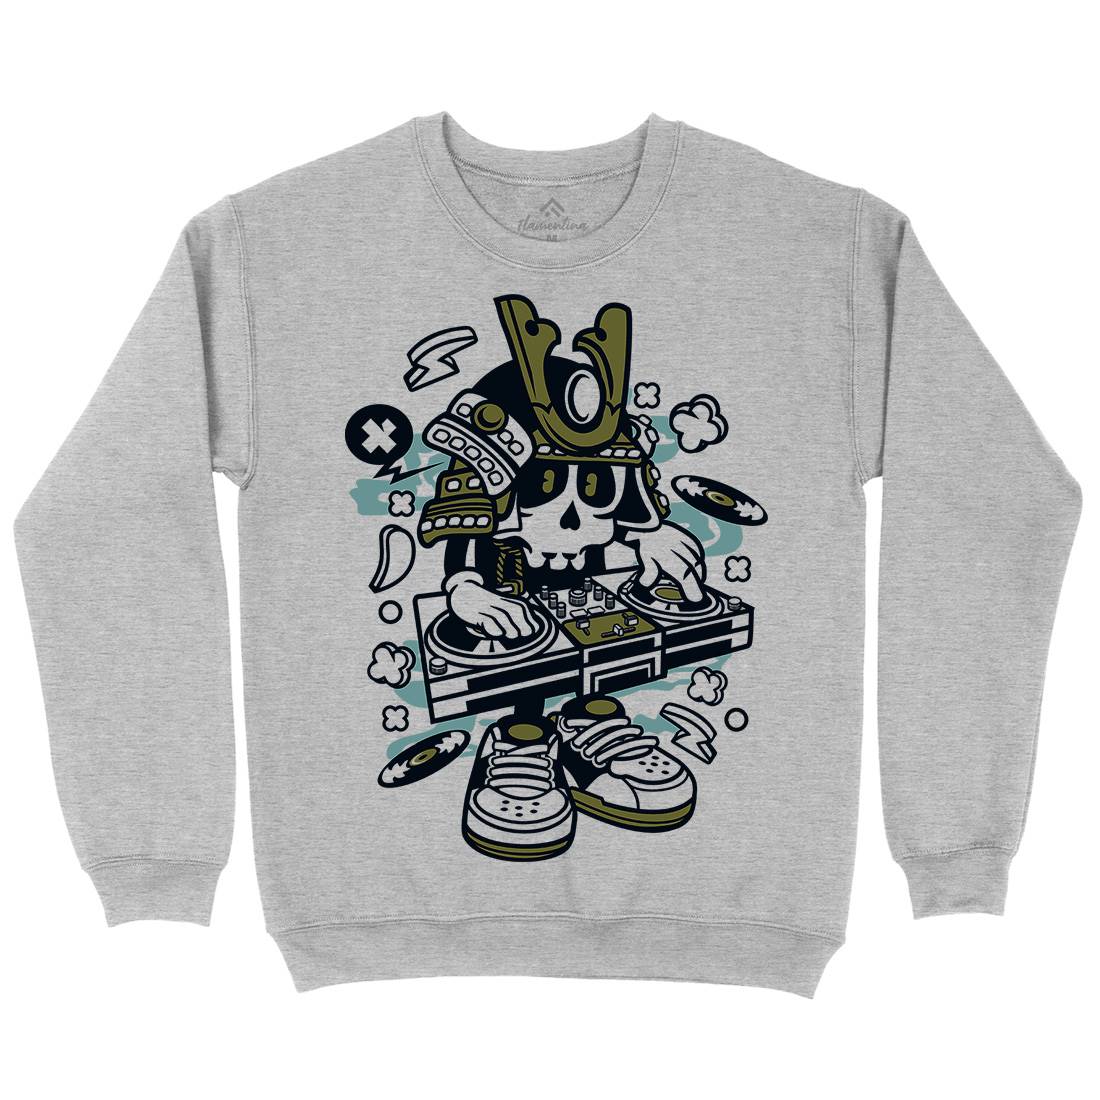 Samurai Dj Kids Crew Neck Sweatshirt Music C216